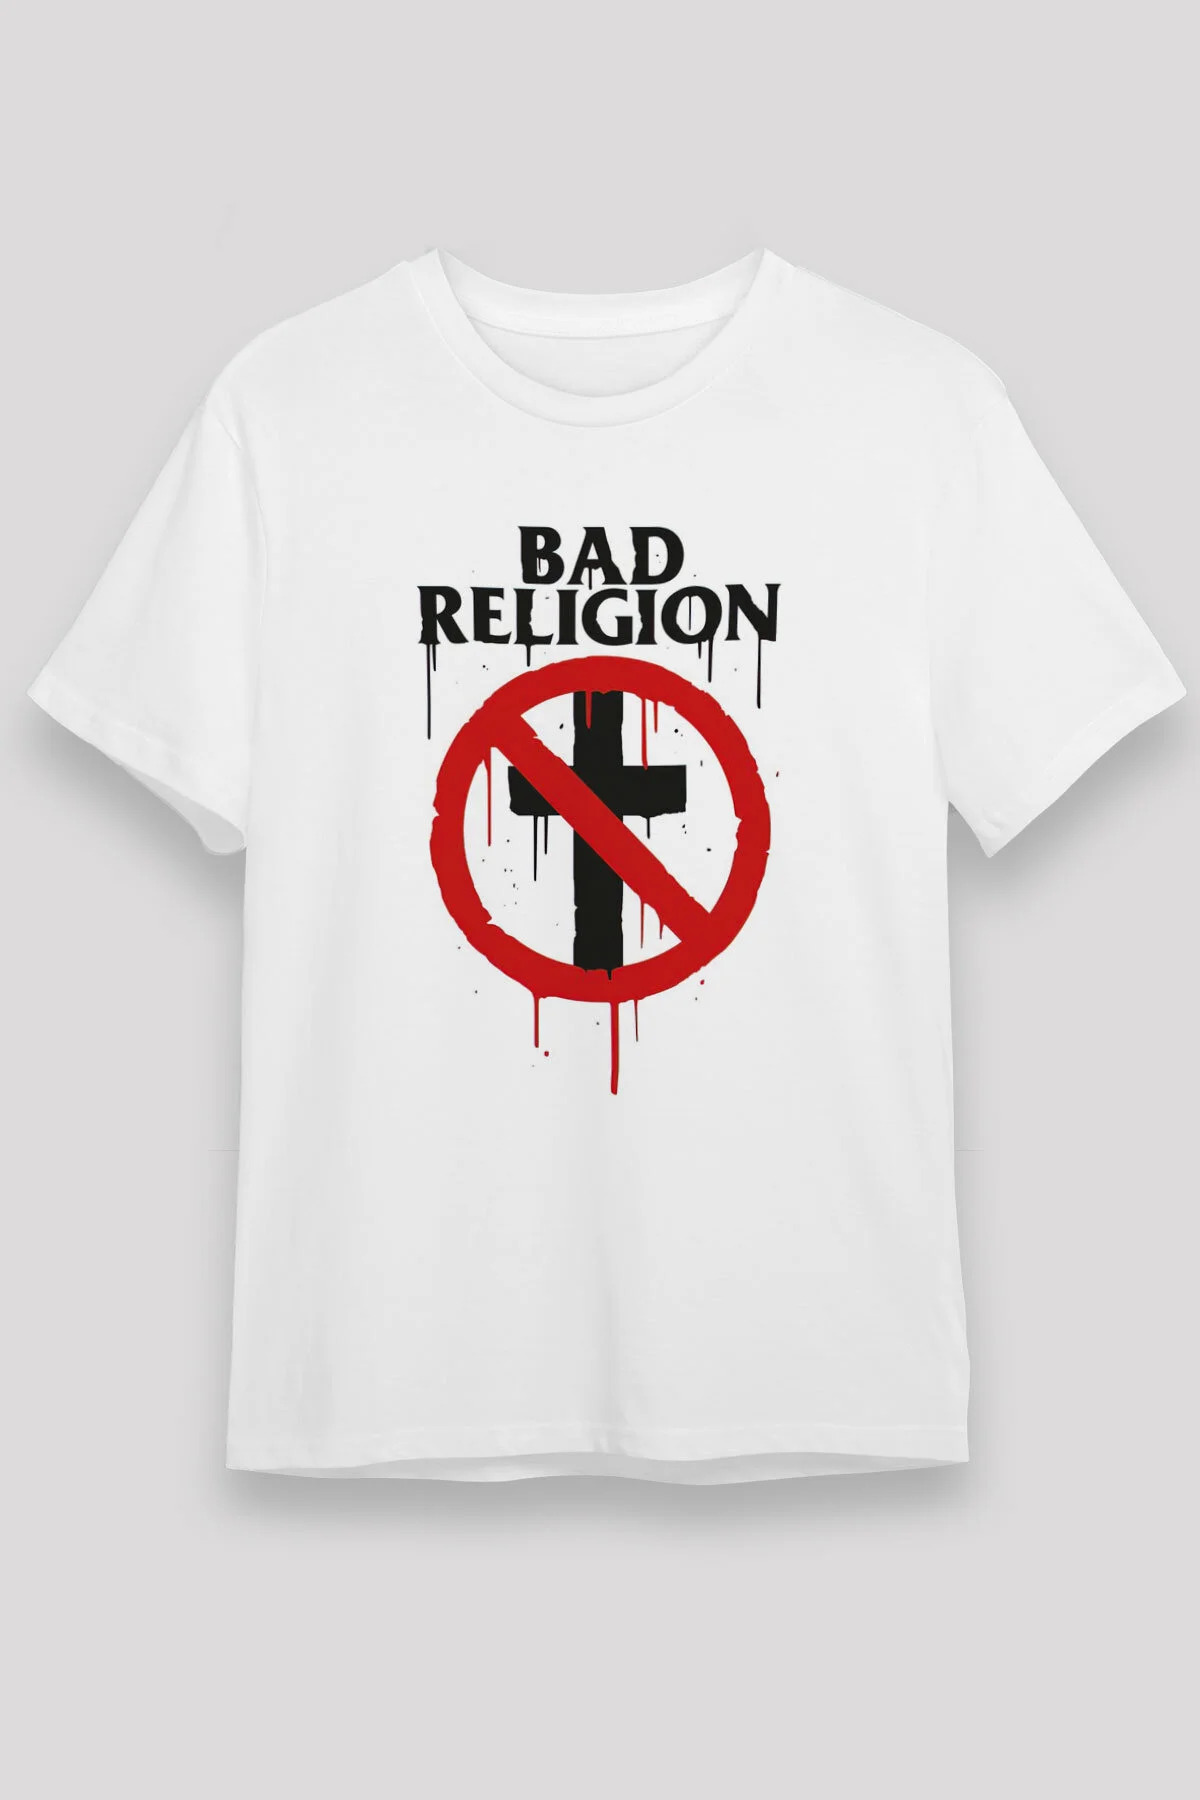 Bad Religion ,Music Band ,Unisex Tshirt 26 /